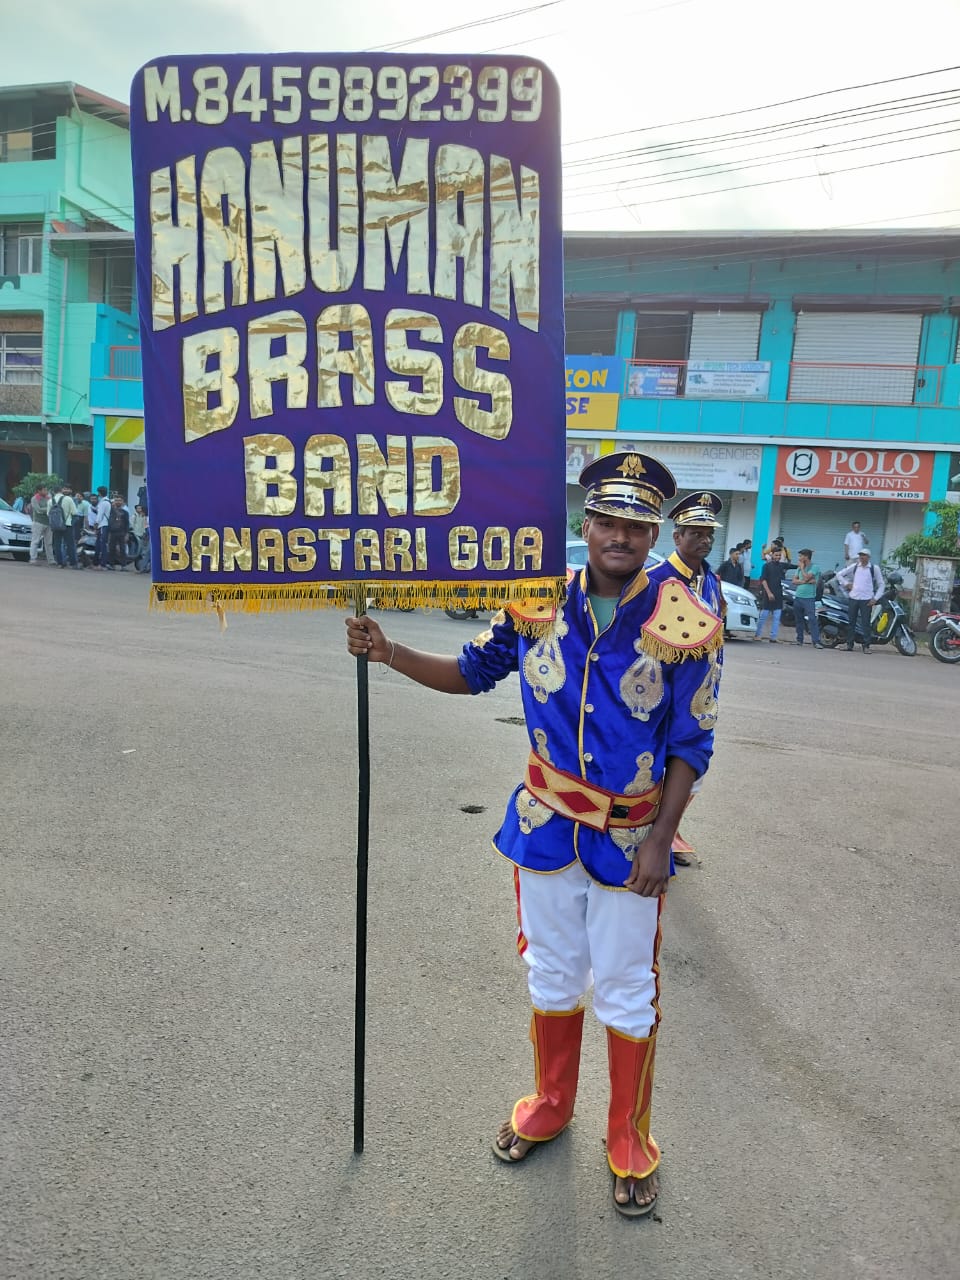  Shree Hanuman Brass Band in Goa 